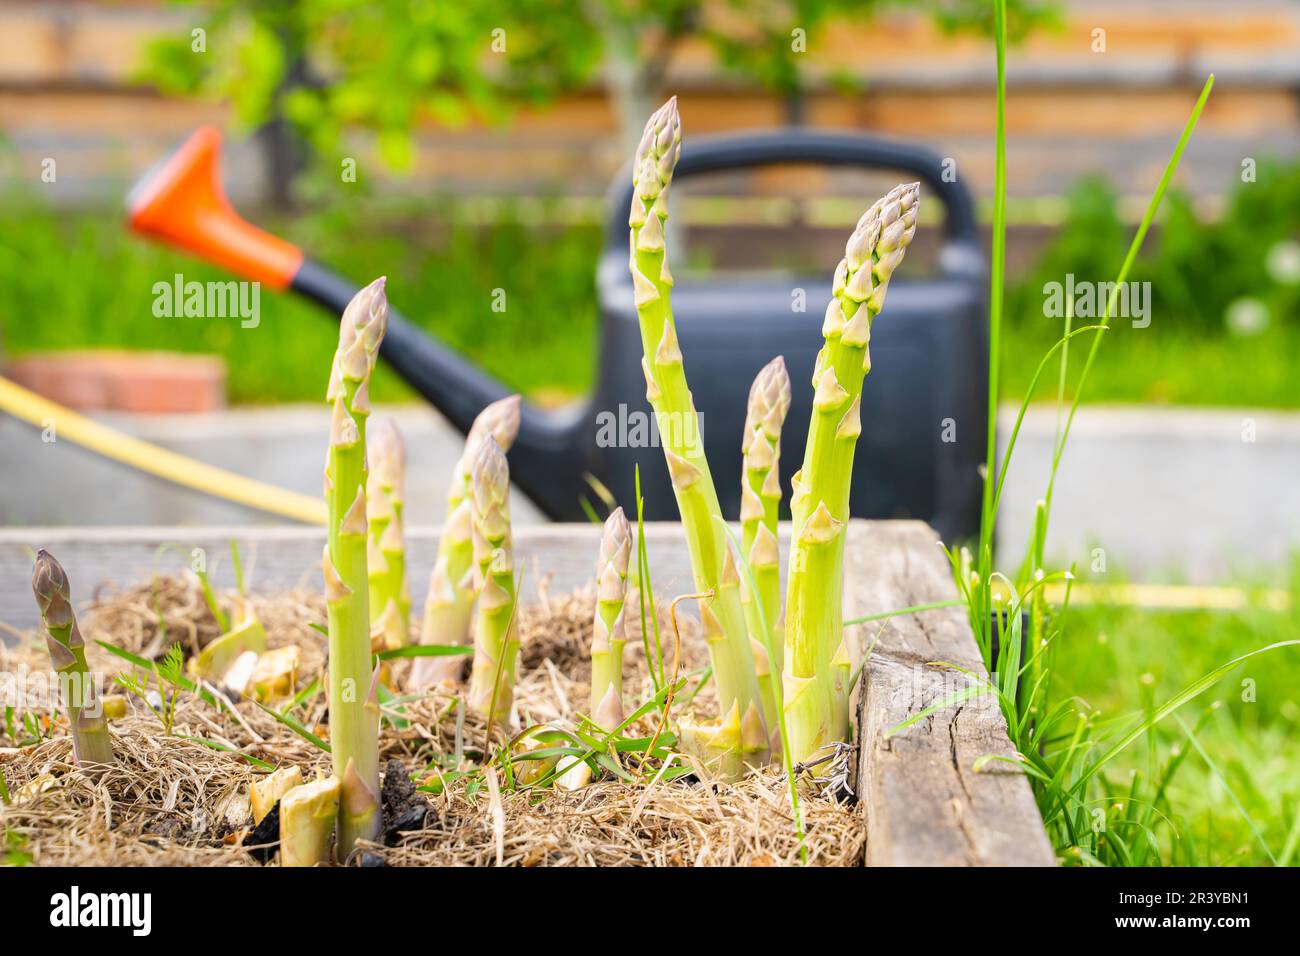 Grüner Spargel wächst in einem Gartenbett vor dem Hintergrund einer Gießkanne Stockfoto